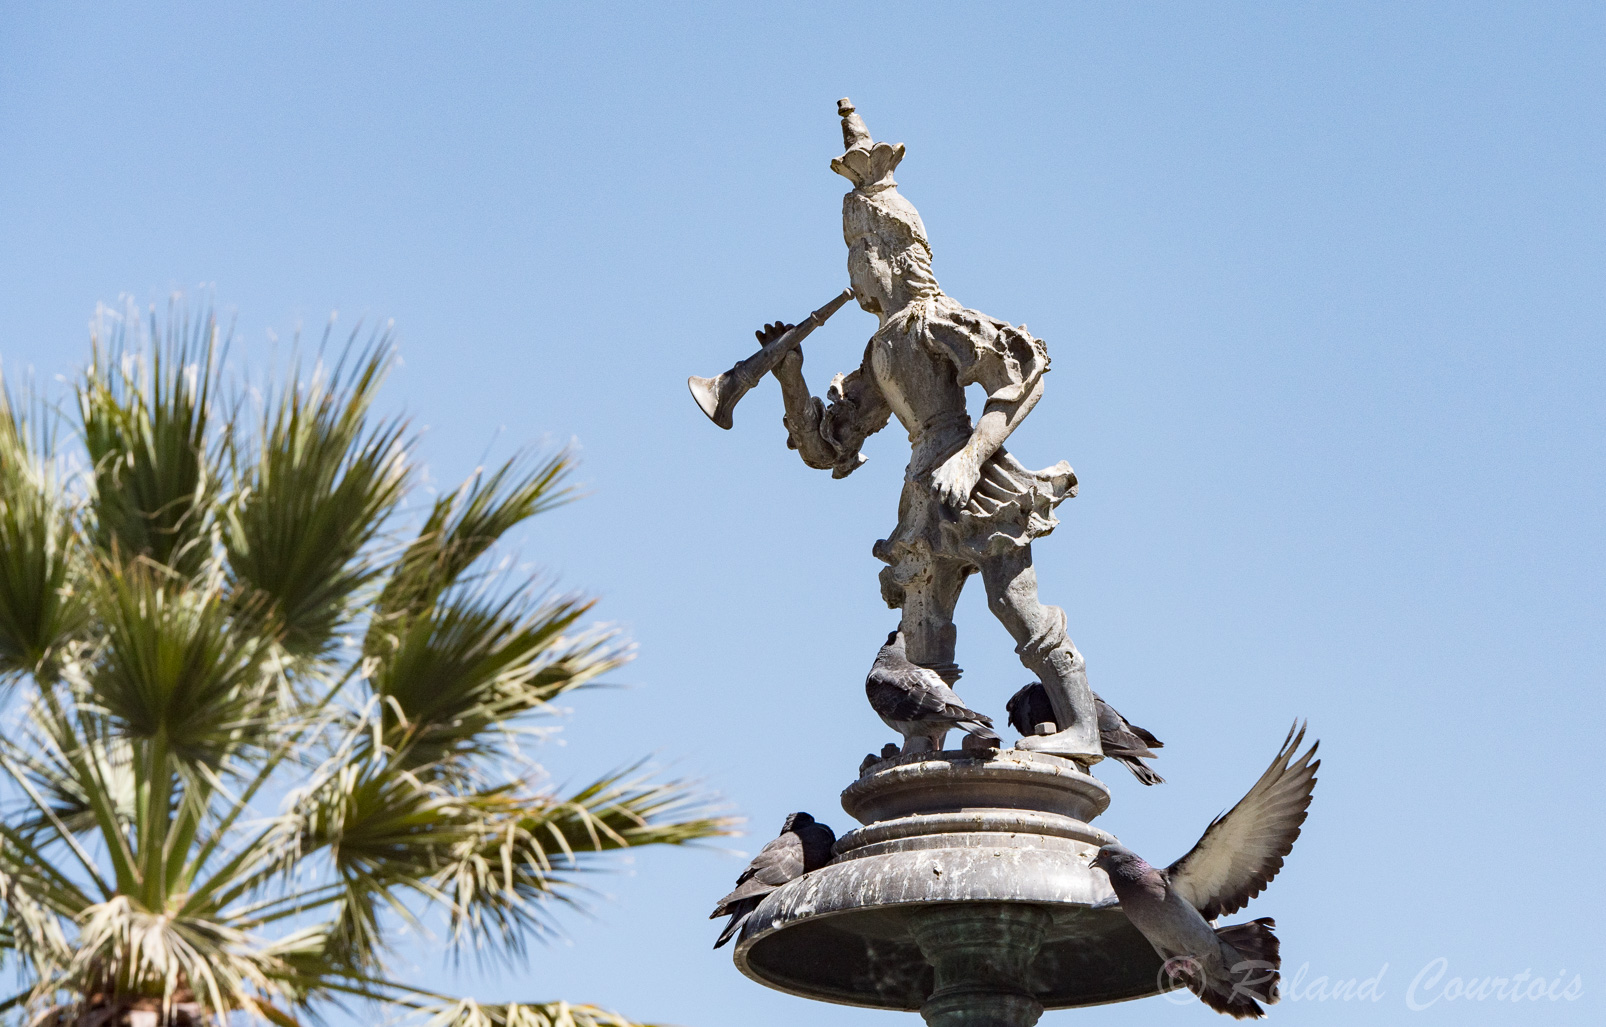 Au centre de la Plaza Mayor, une statue représente un soldat du 16ème siècle chargé d'annoncer aux citoyens les nouvelles et évènnements publics.